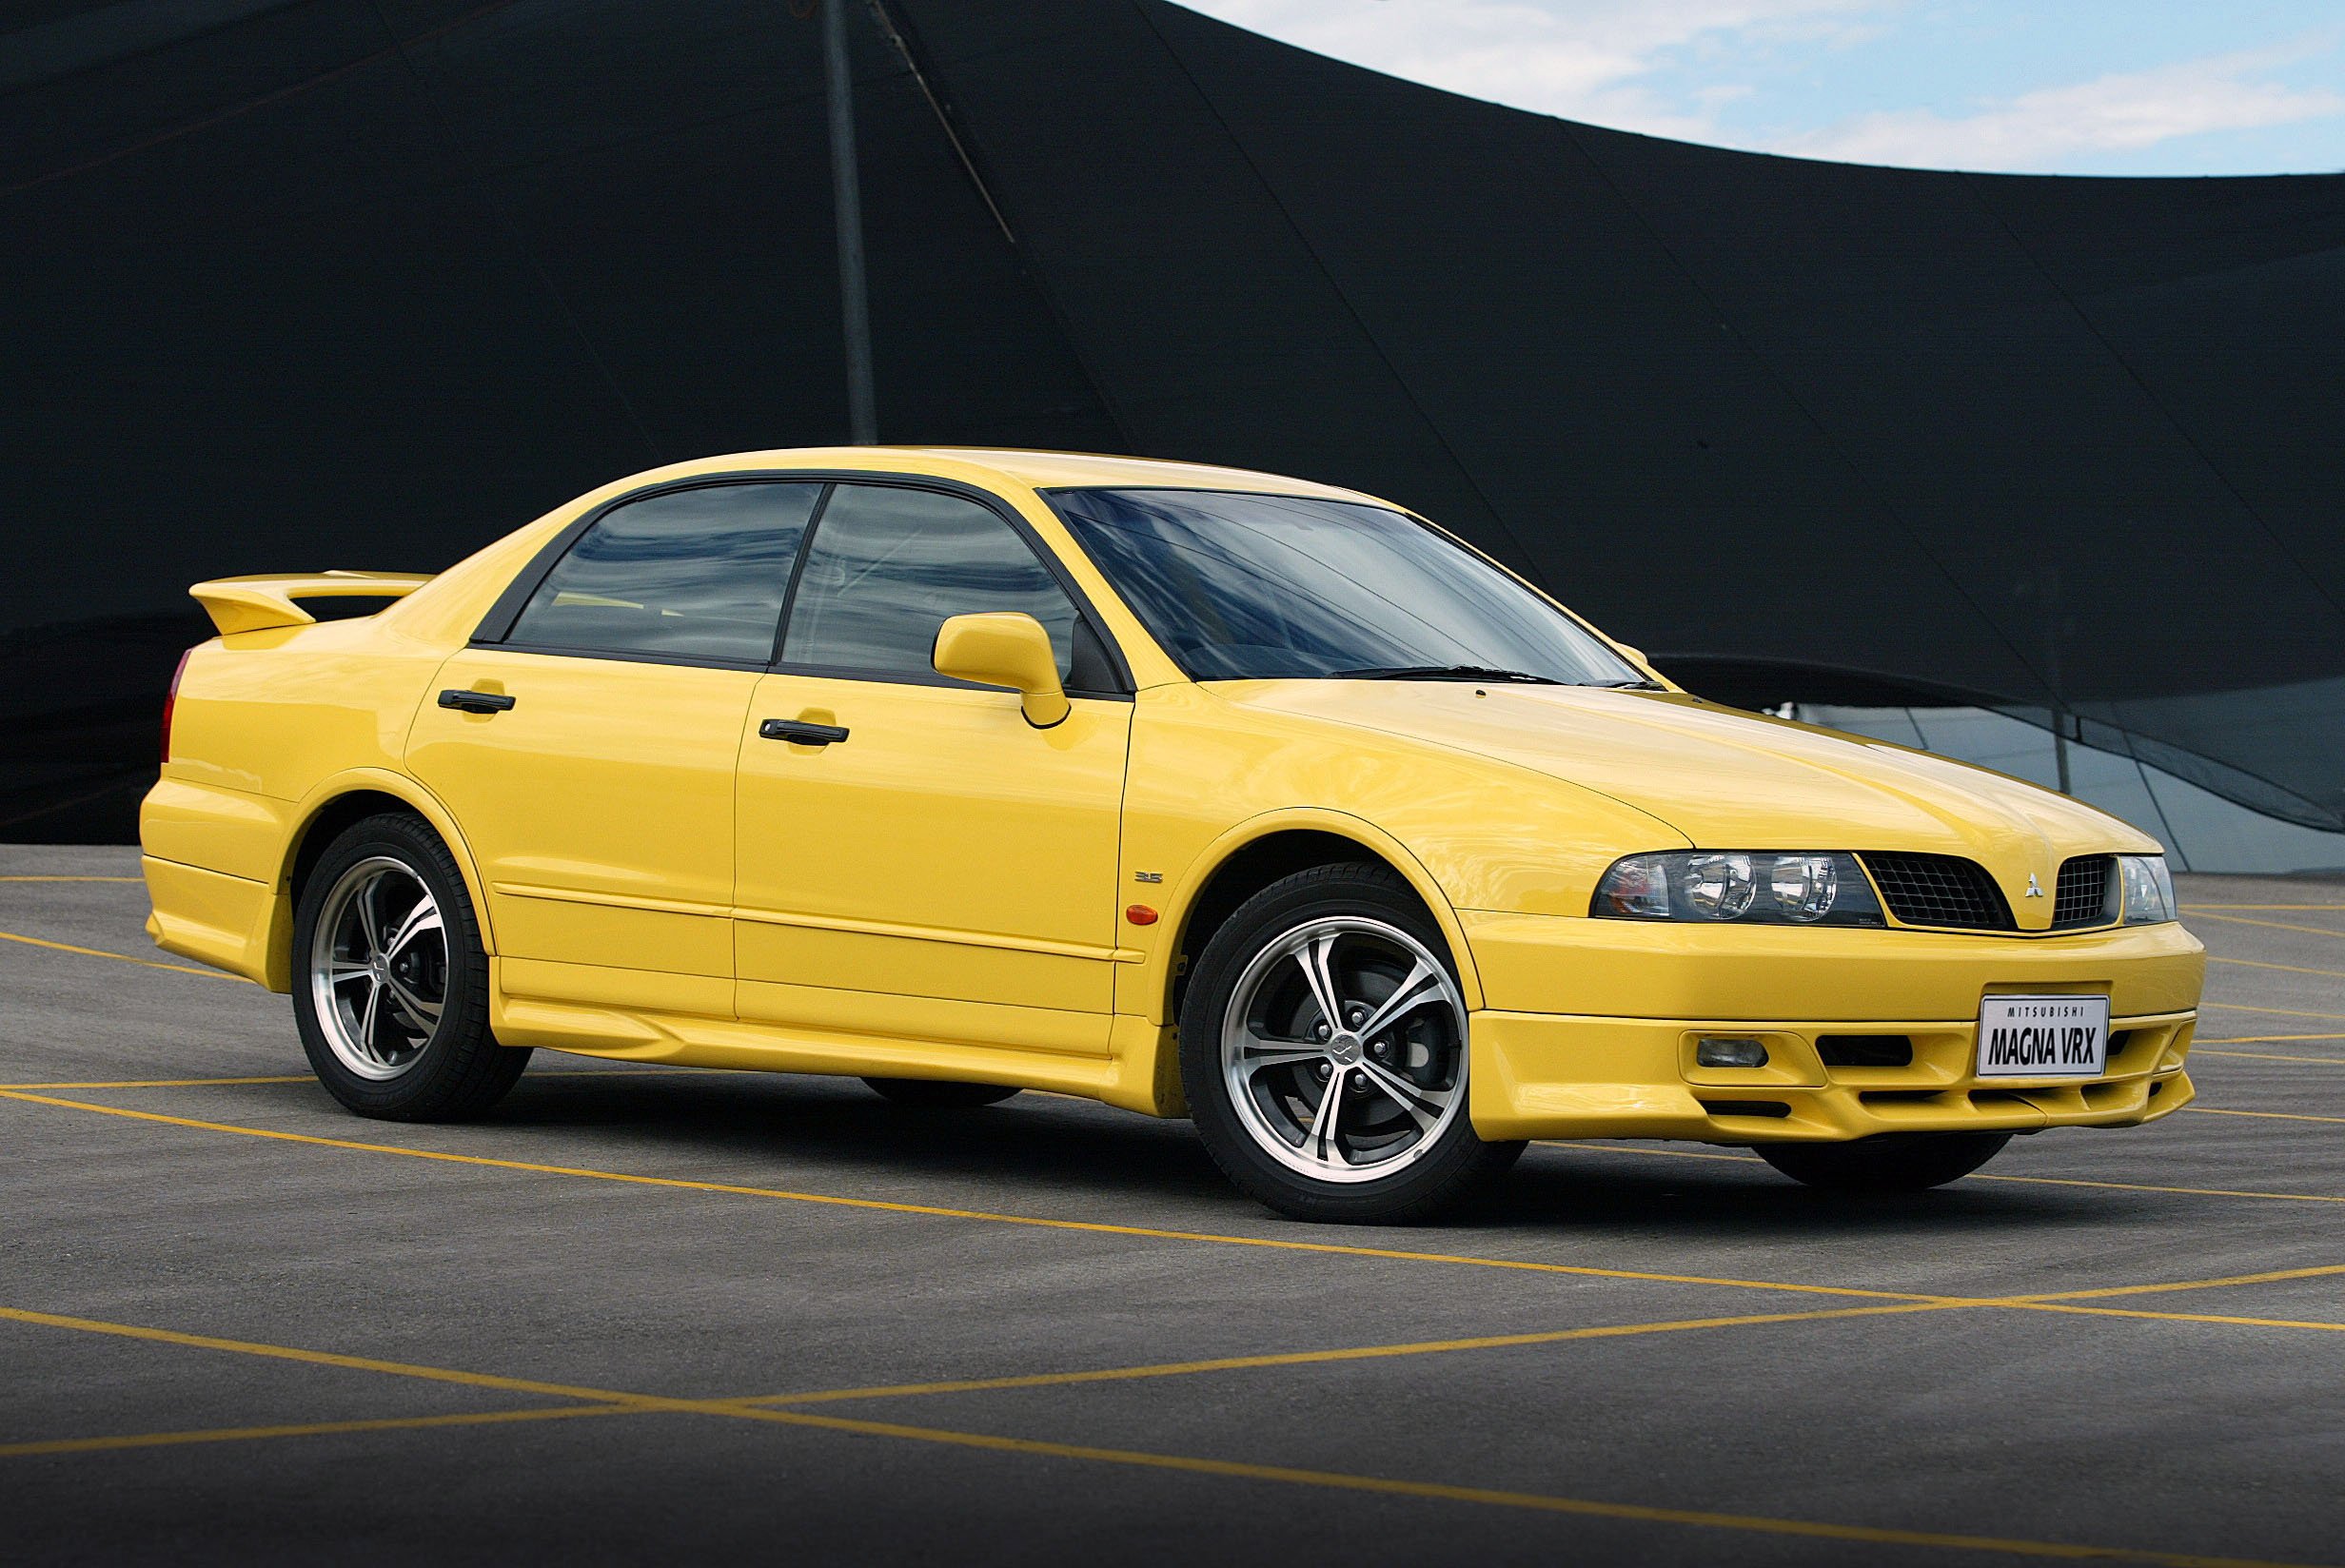 2003, Mitsubishi, Magna, Vr x, Wasp, Yellow Wallpaper